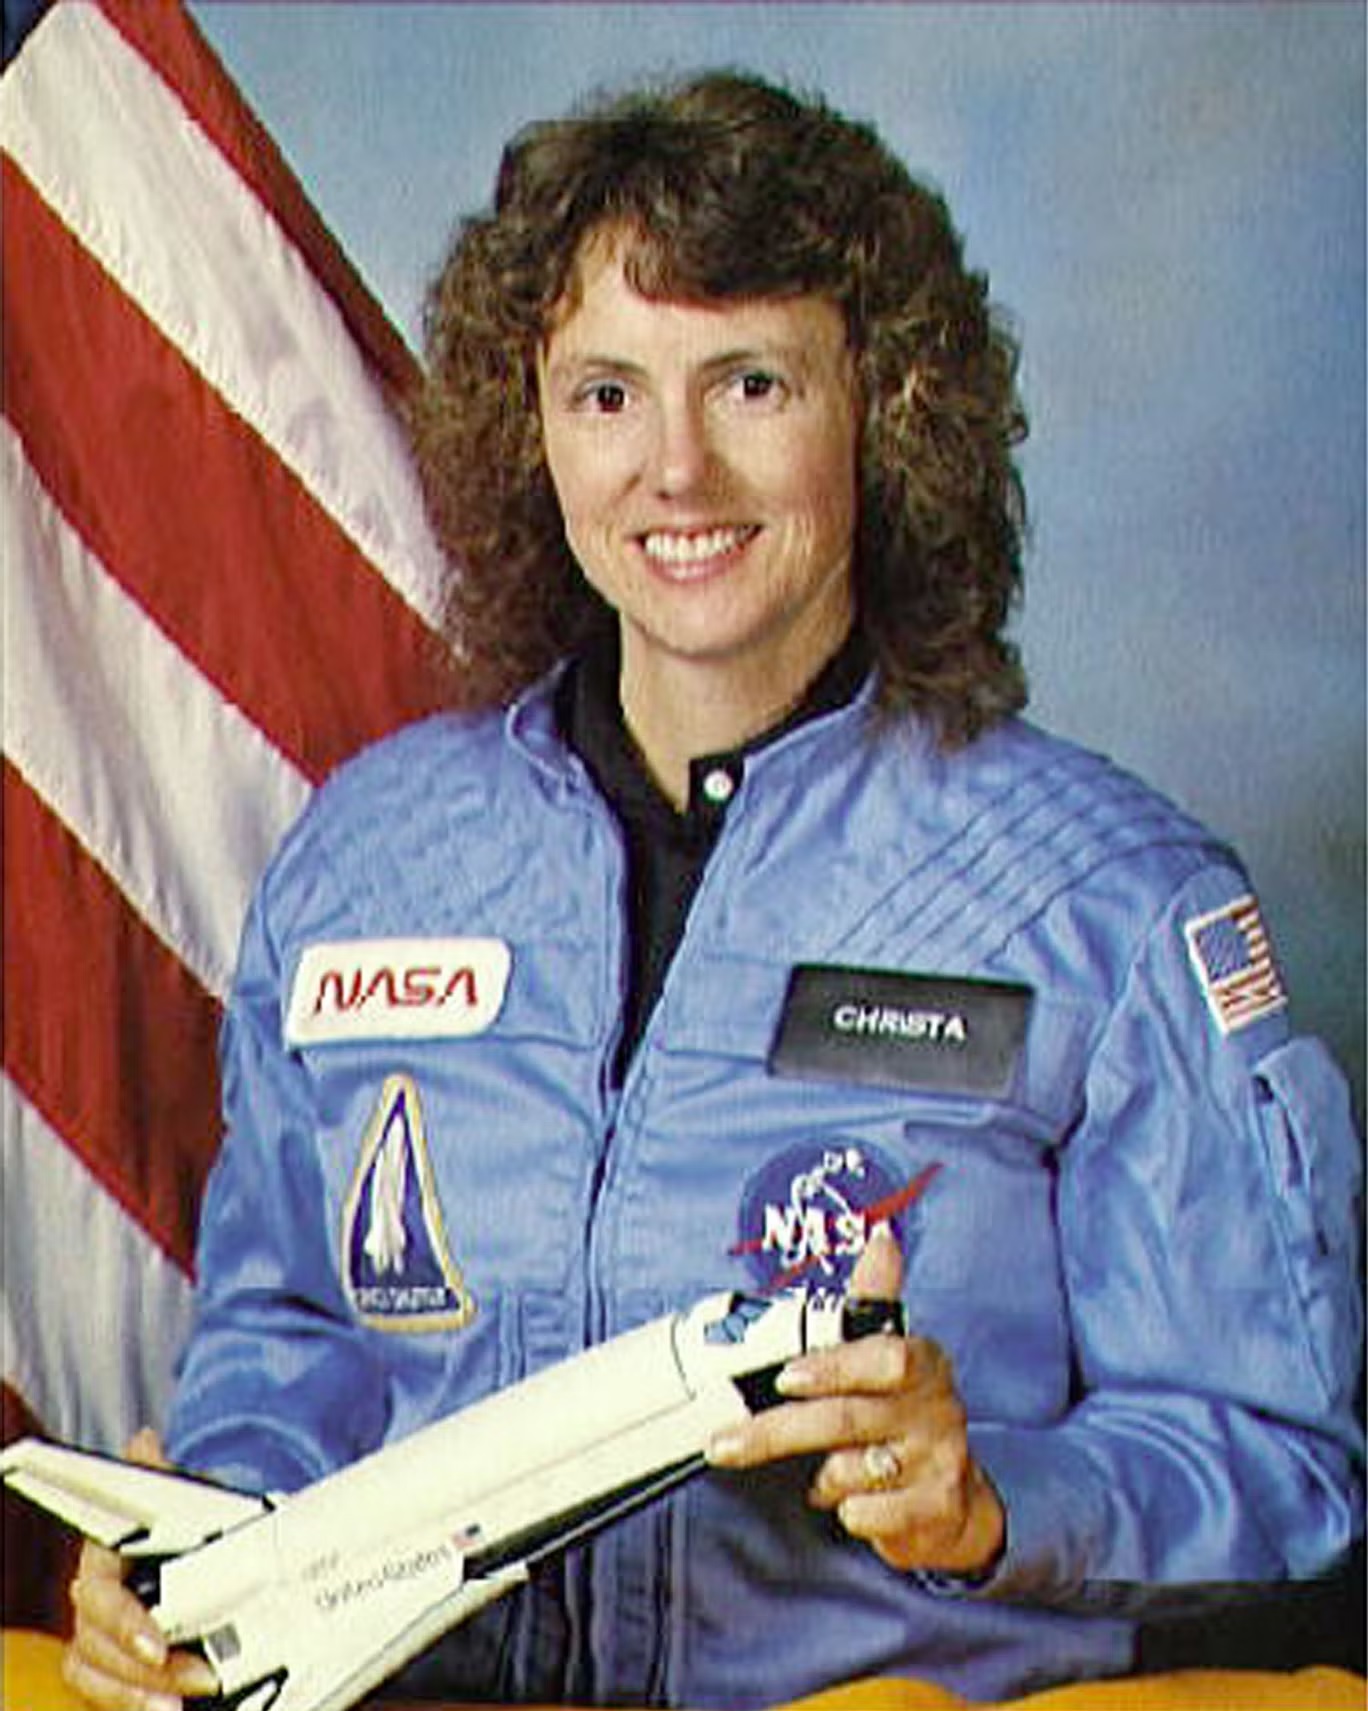 لقيت المعلمة كريستا مكوليف حتفها في كارثة مكوك الفضاء تشالنجر في عام 1986 (غيتي)